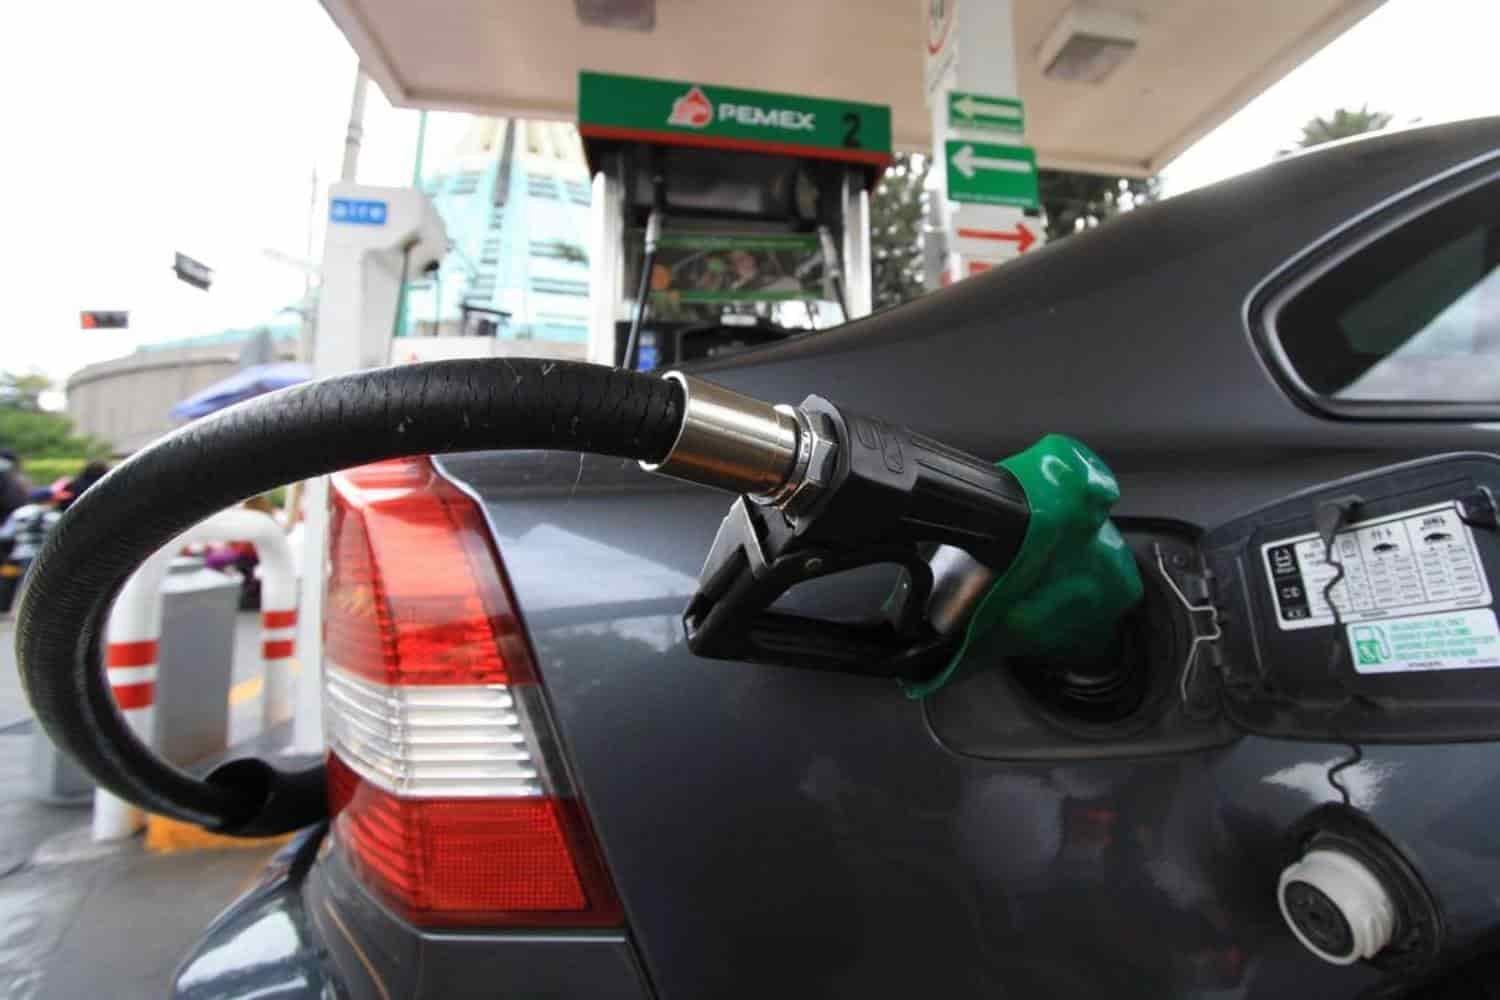 Reactiva SHCP estímulo a gasolina en zona fronteriza